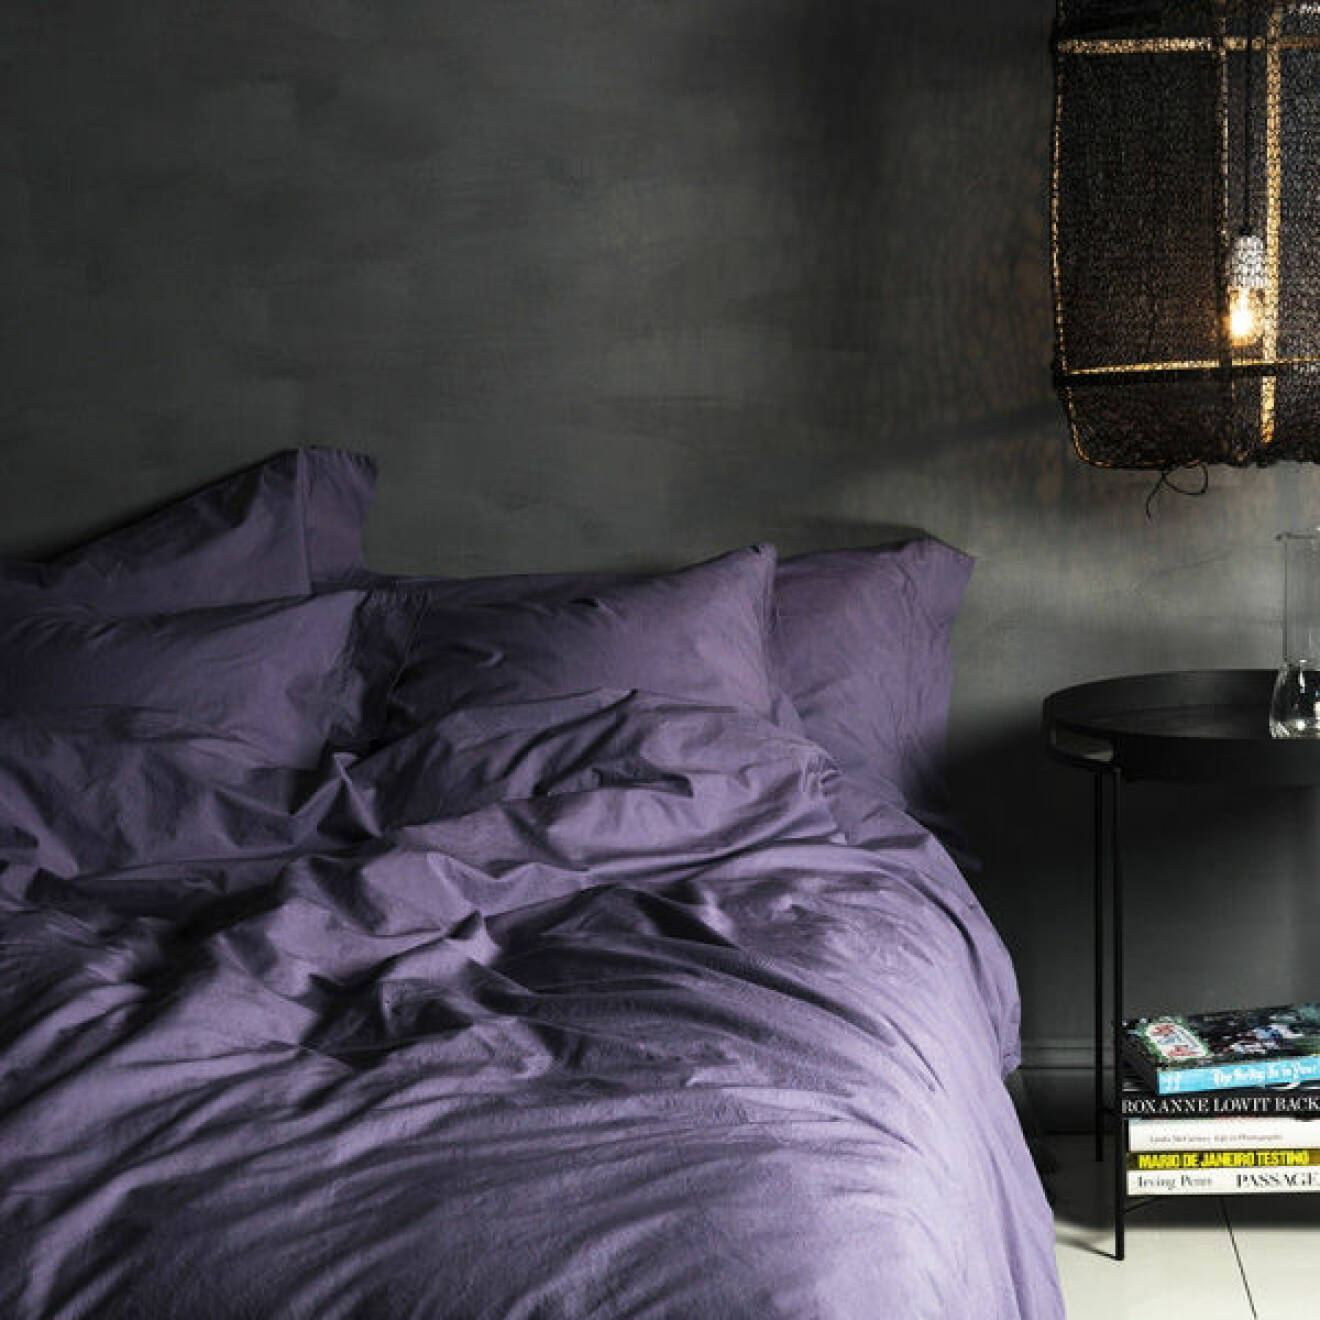 Mörk sovrum med säng bäddad med violfärgade lakan.